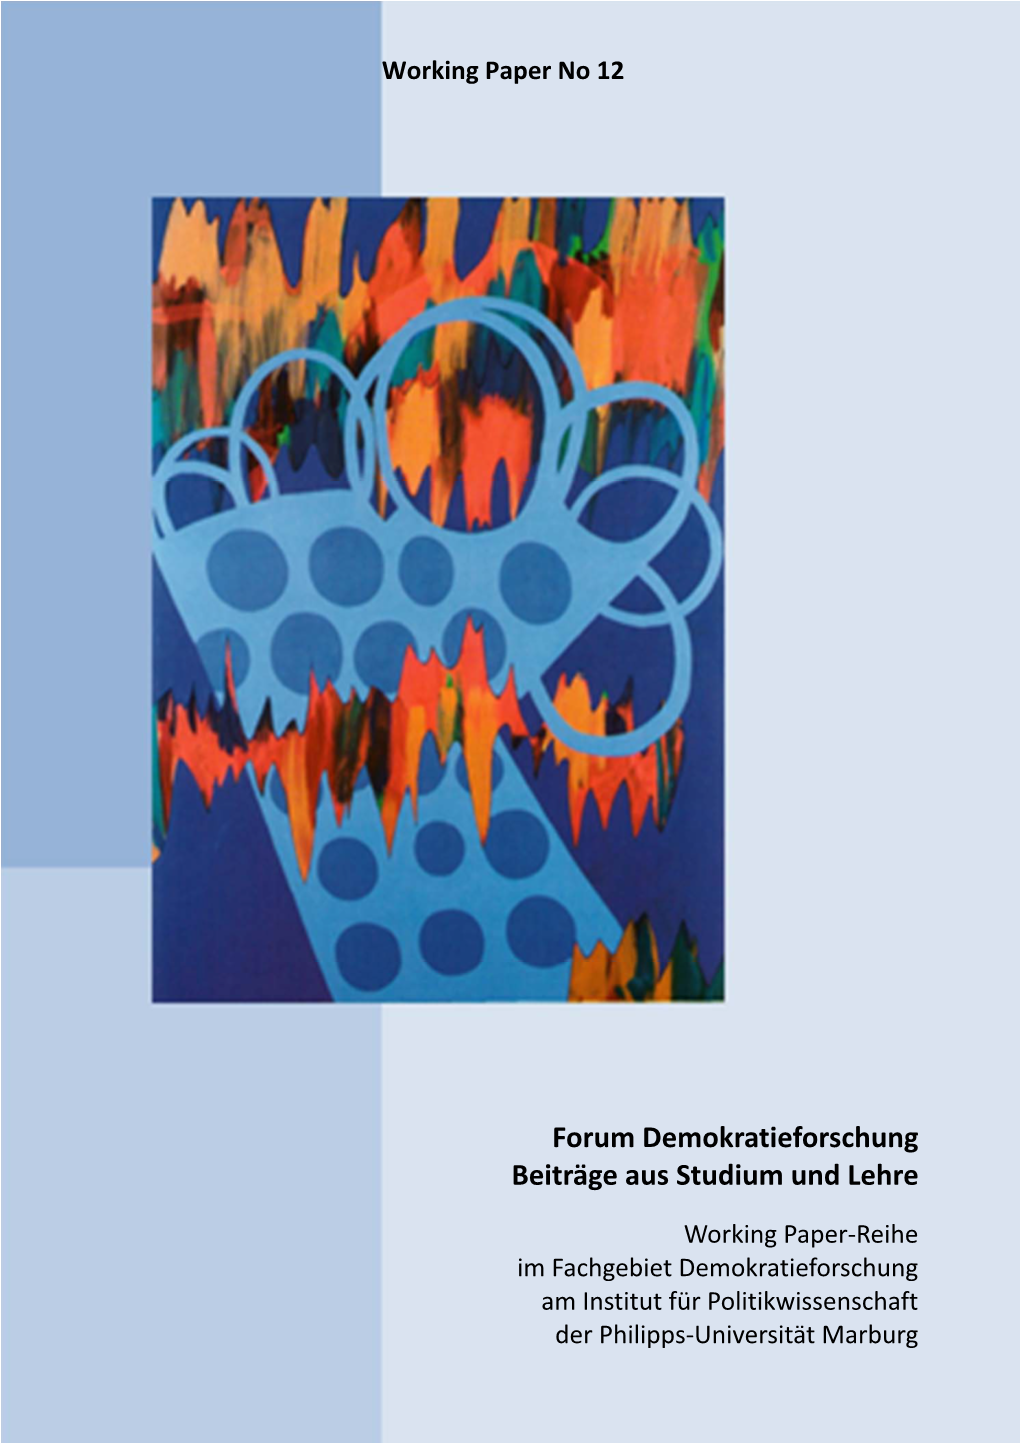 Forum Demokratieforschung Beiträge Aus Studium Und Lehre